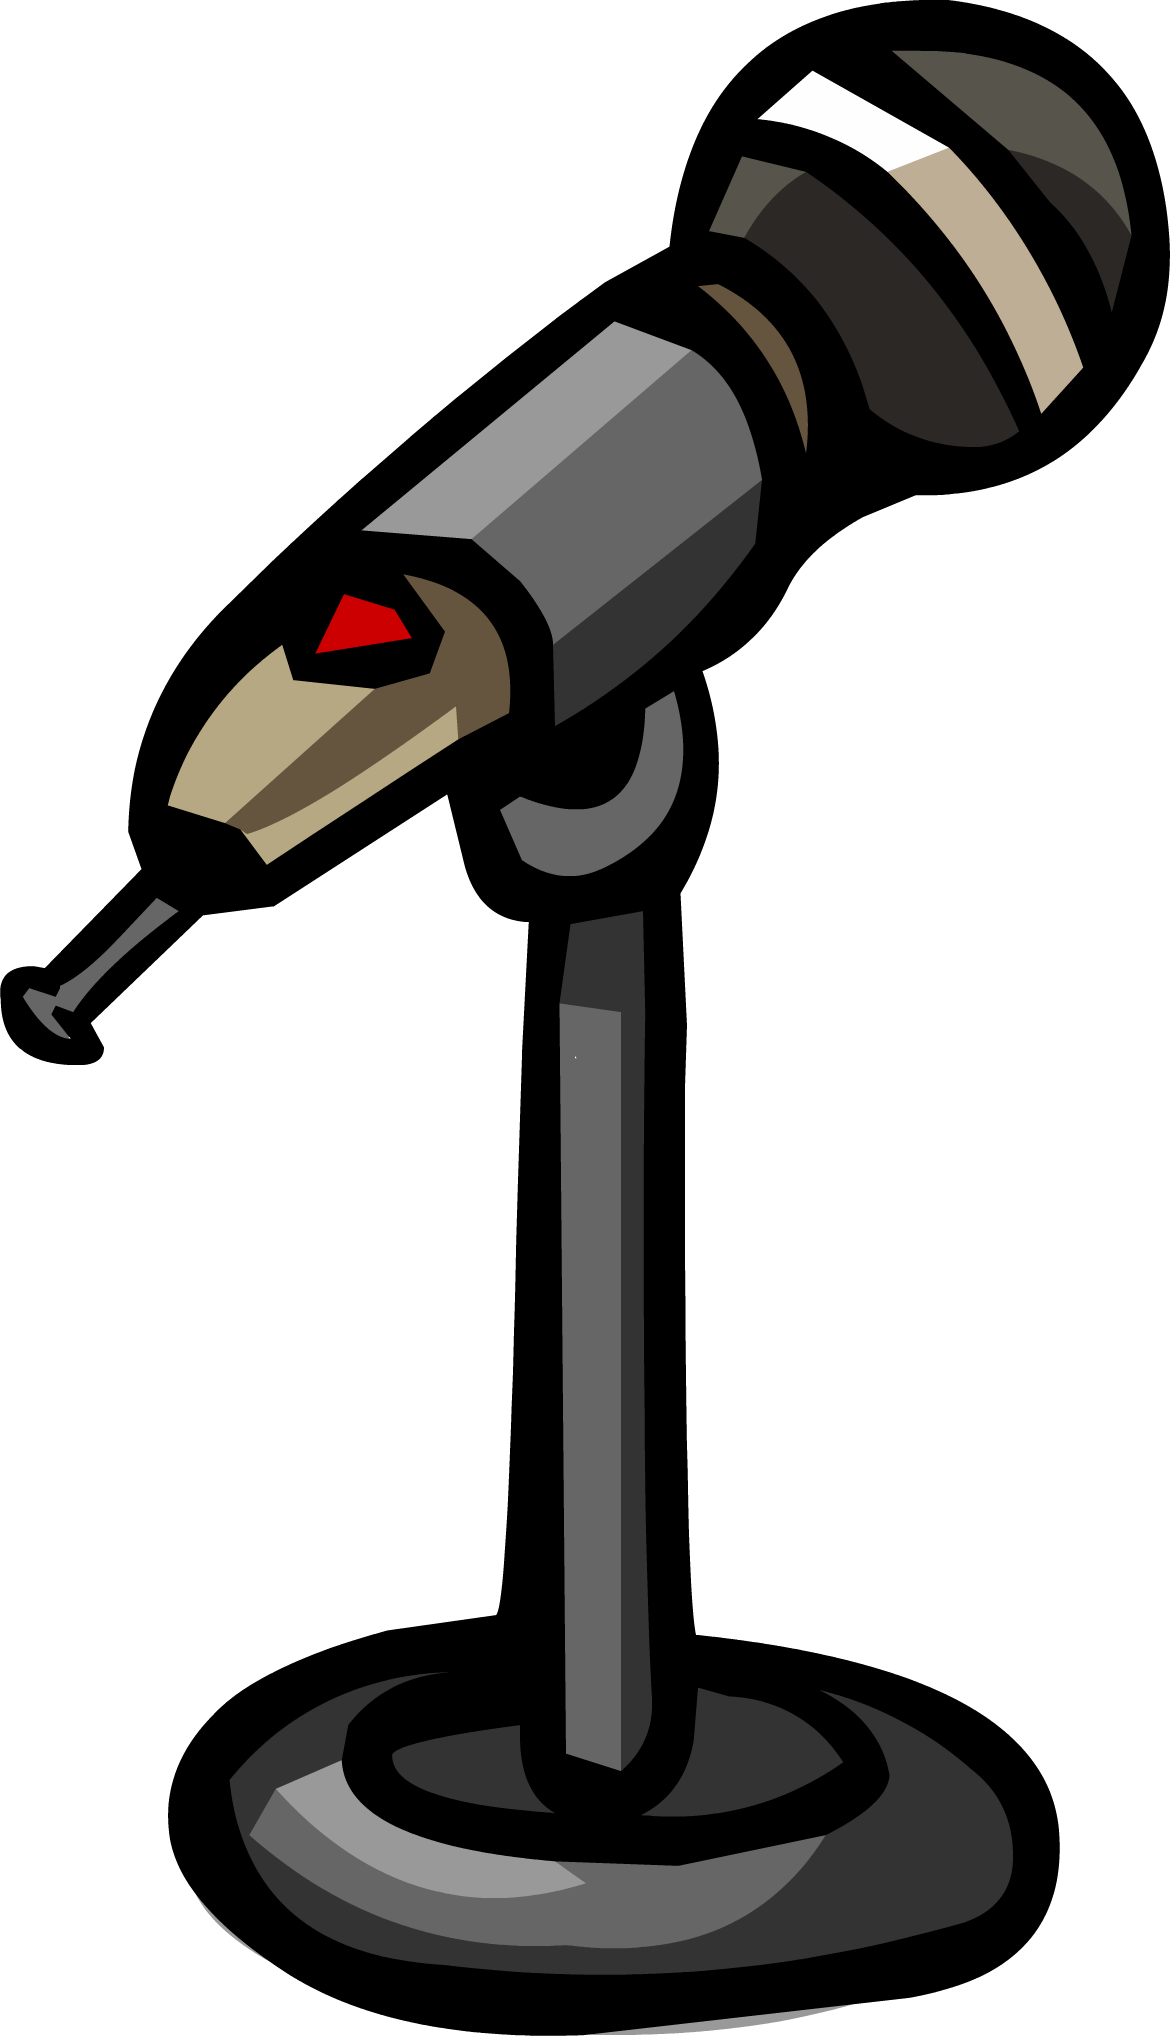 Microphone Sprite 002 - Club Penguin Microphone (1170x2036)